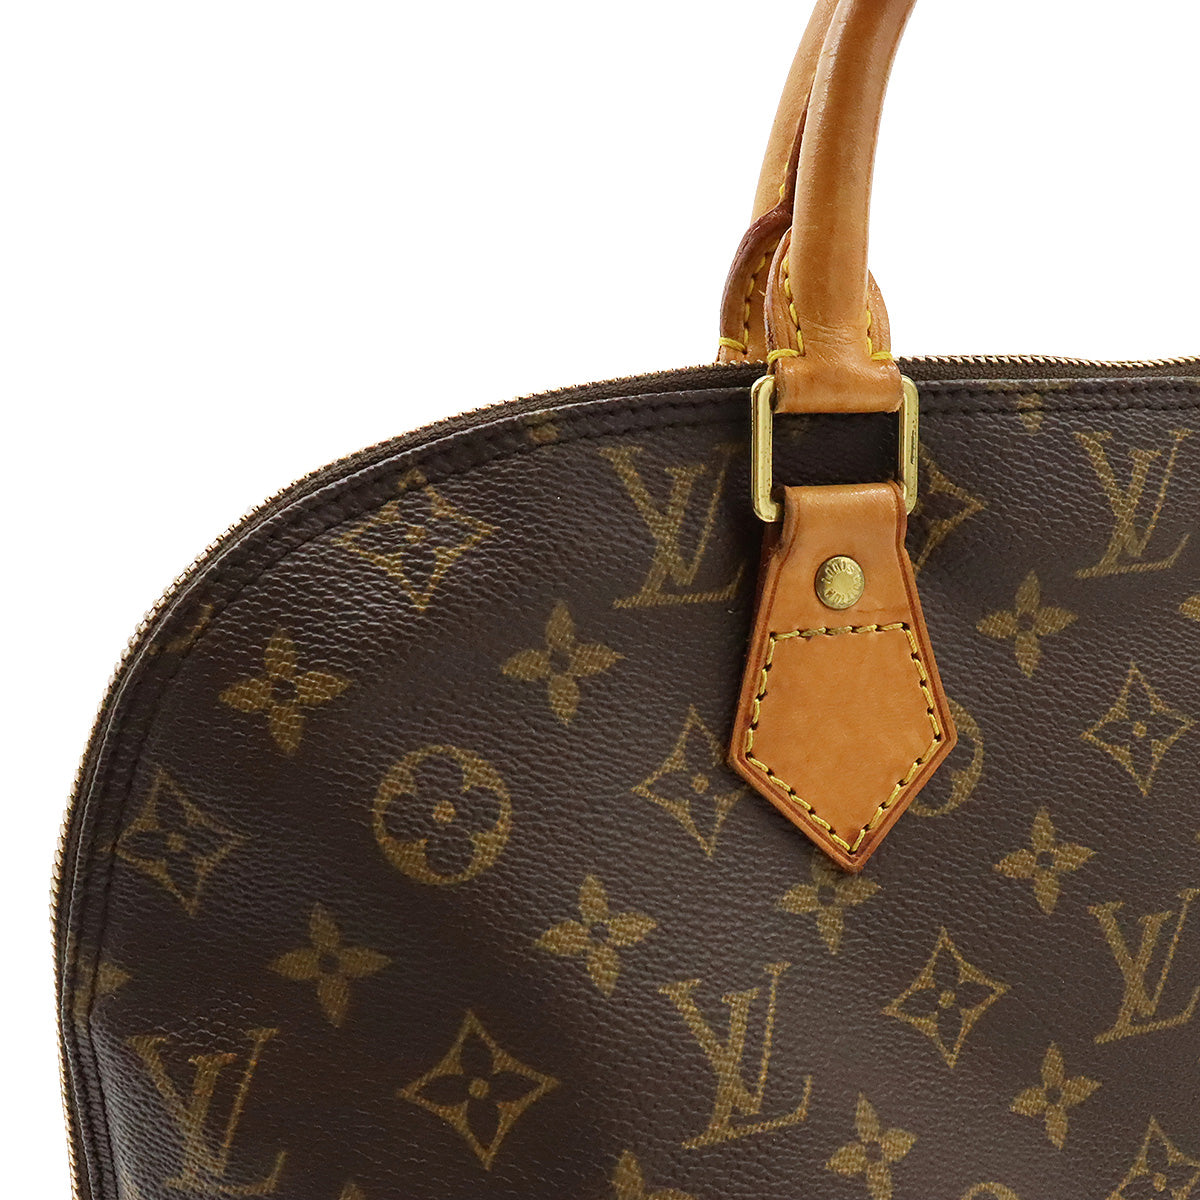 Vintage Louis Vuitton Danube Satchel Authentic LV Bag Purse USA French Co 